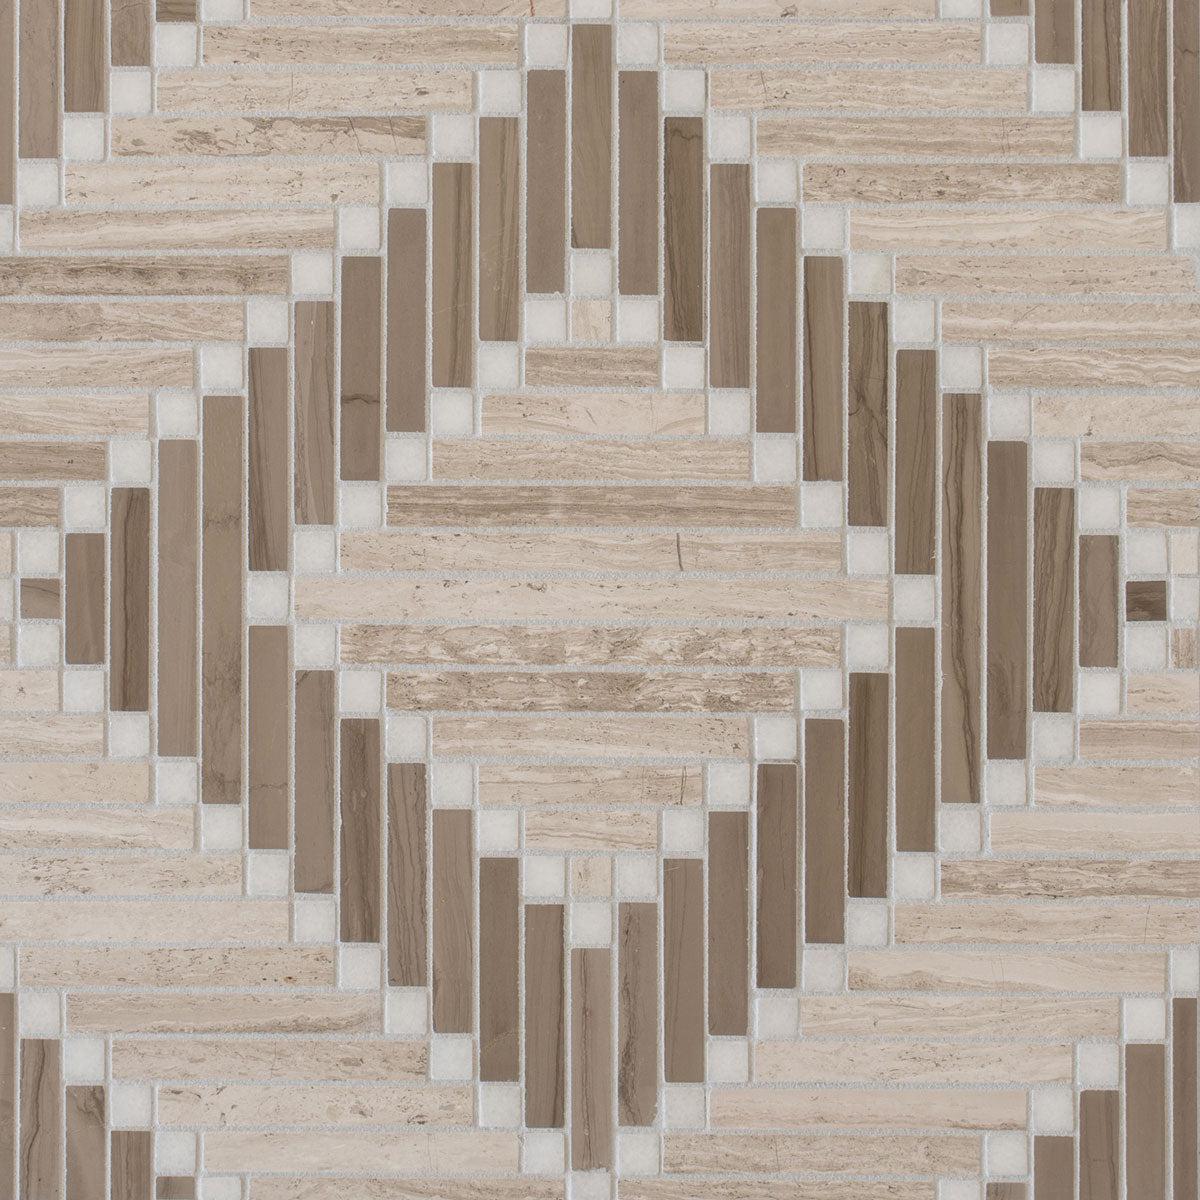 Santorini Geometric Wood Look